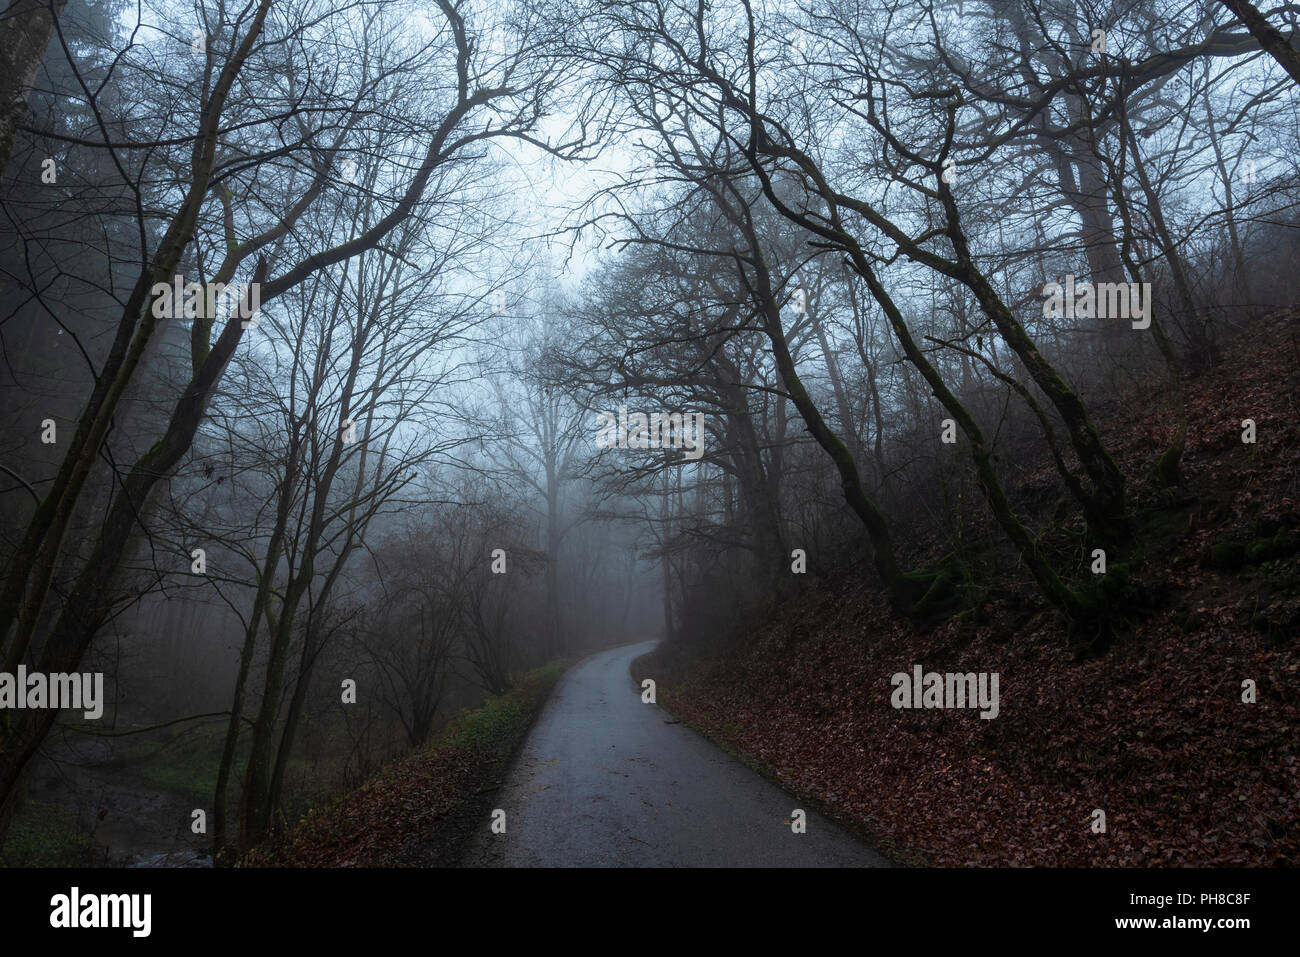 Bei kaltem Wetter Bild mit einem Wald und einem Teppich der getrockneten Blätter auf dem Boden, und eine Gasse in die Dezember Nebel, an einem kalten Morgen. Stockfoto